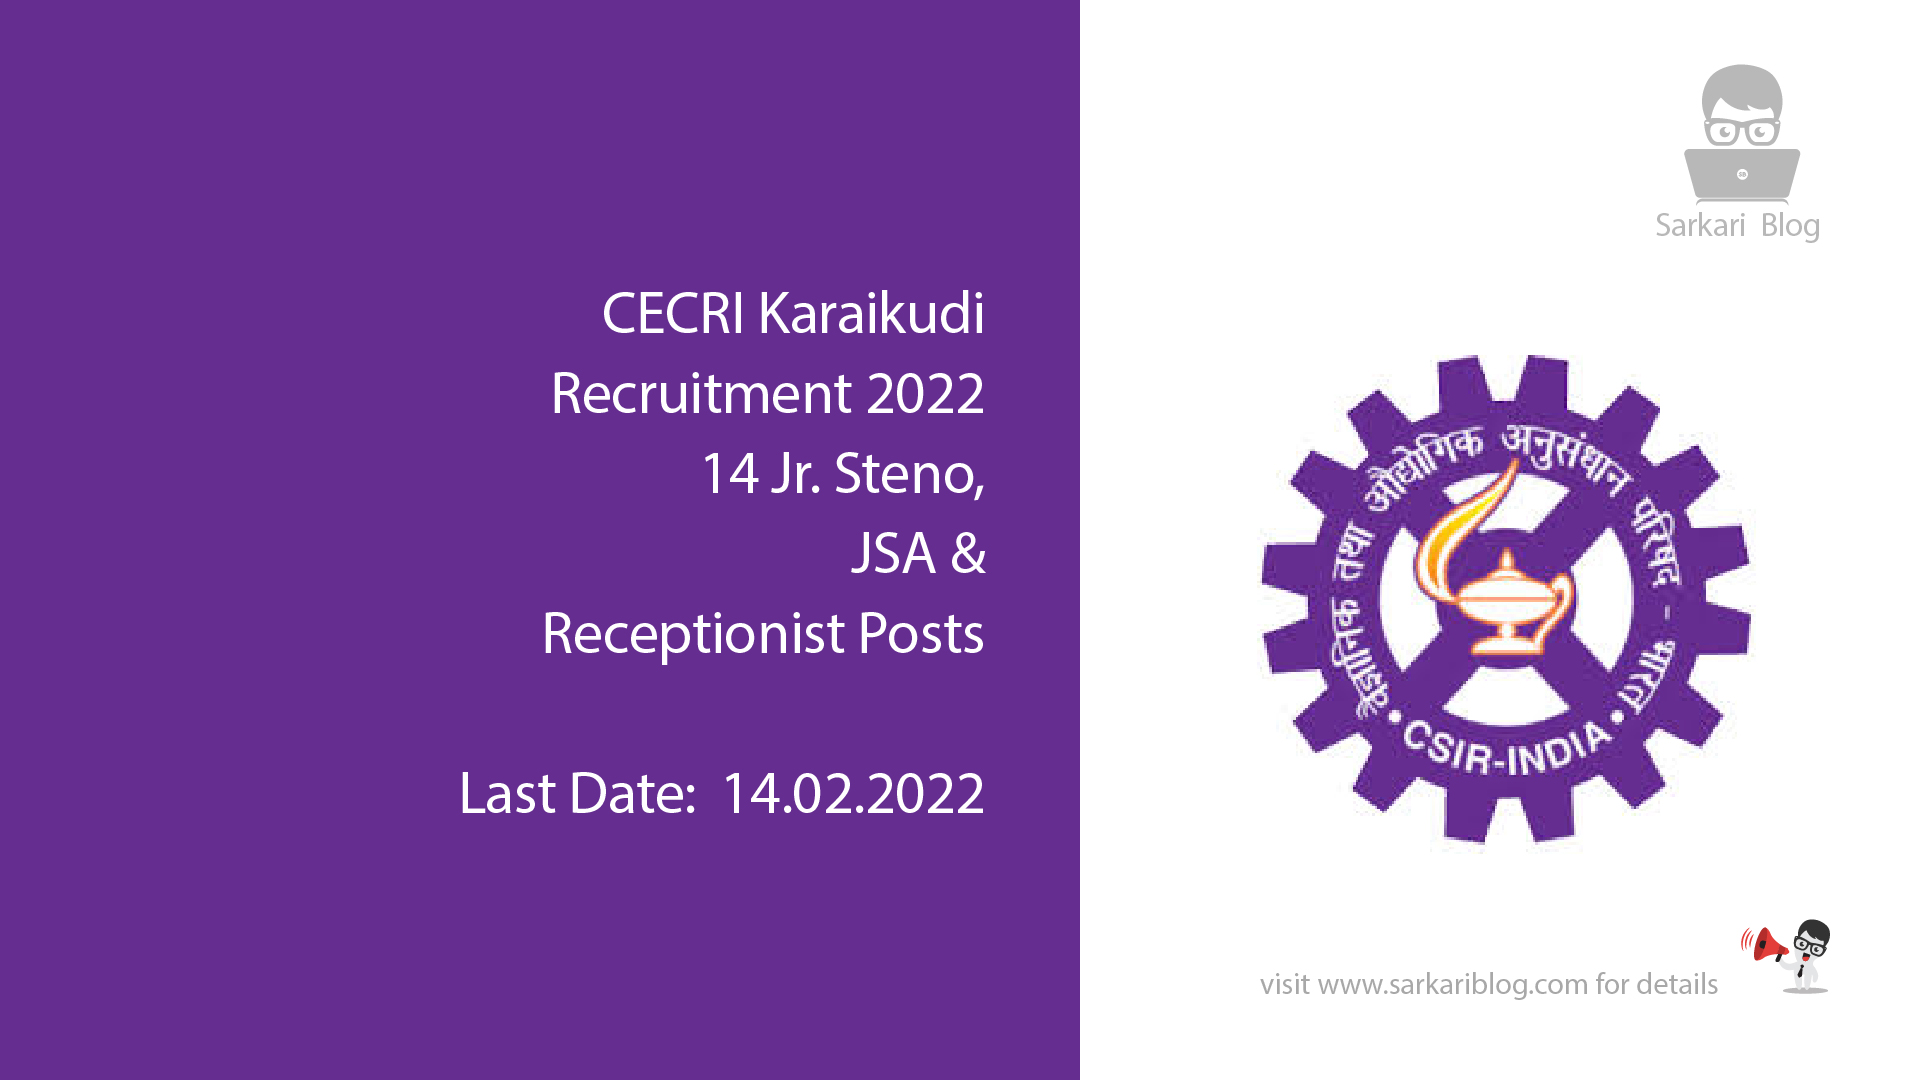 CECRI Karaikudi Recruitment 2022